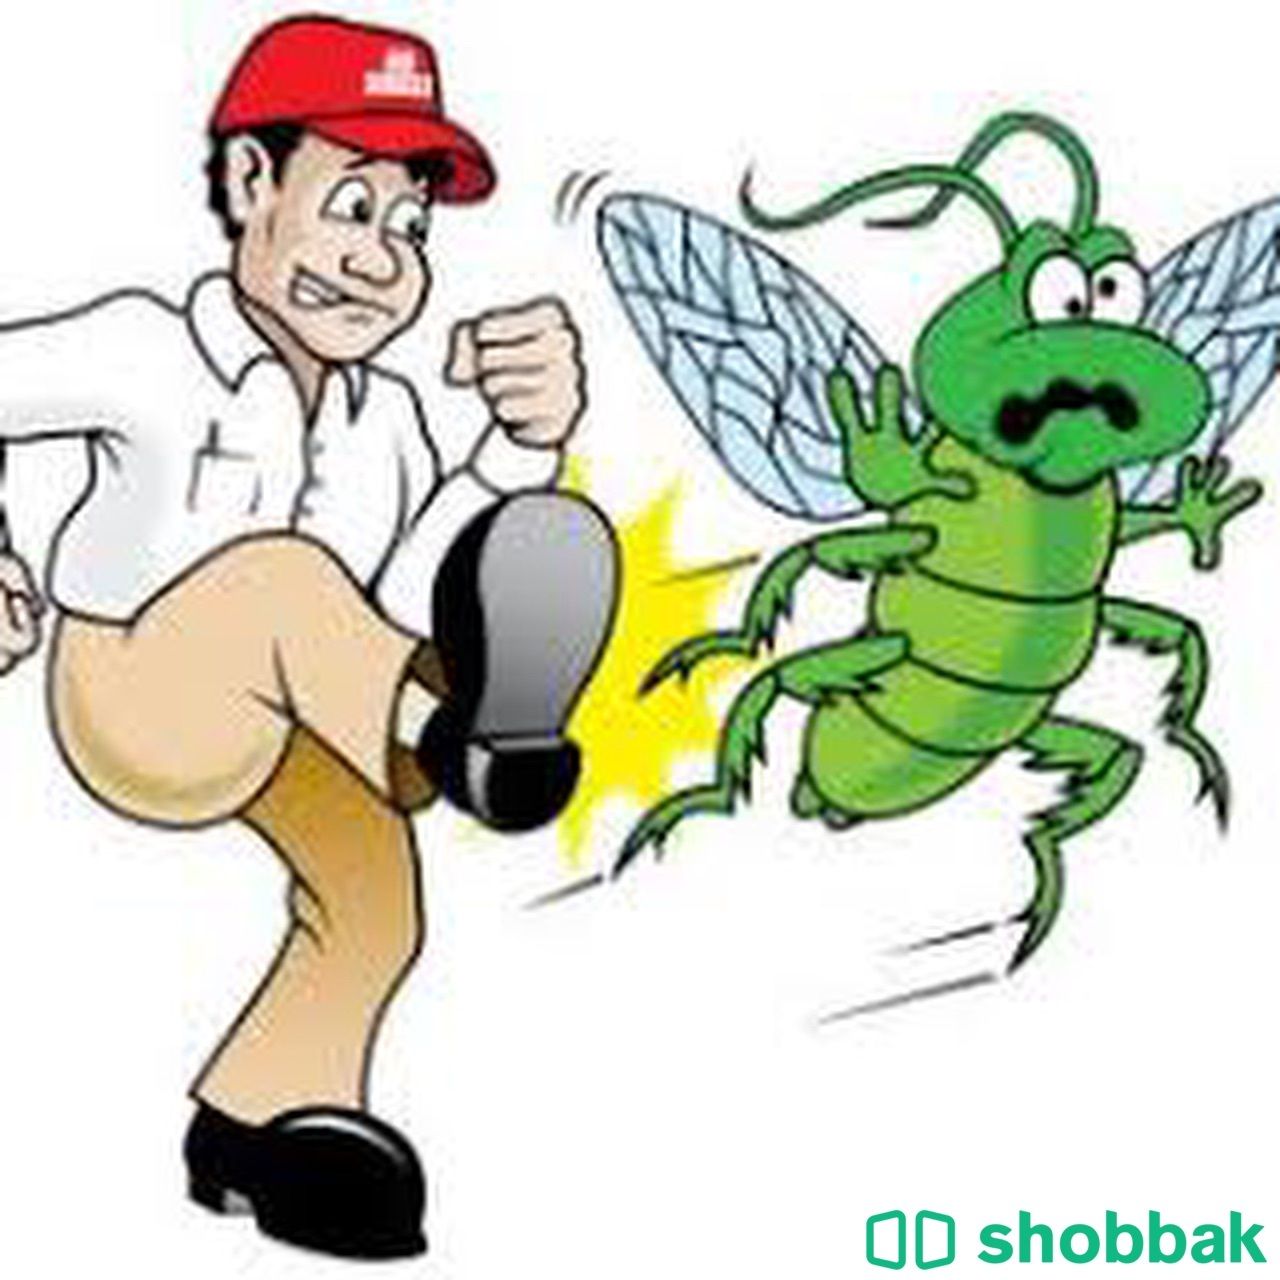 شركة مكافحة حشرات ببريدة رش مبيدات بريدة رش مبيد Shobbak Saudi Arabia